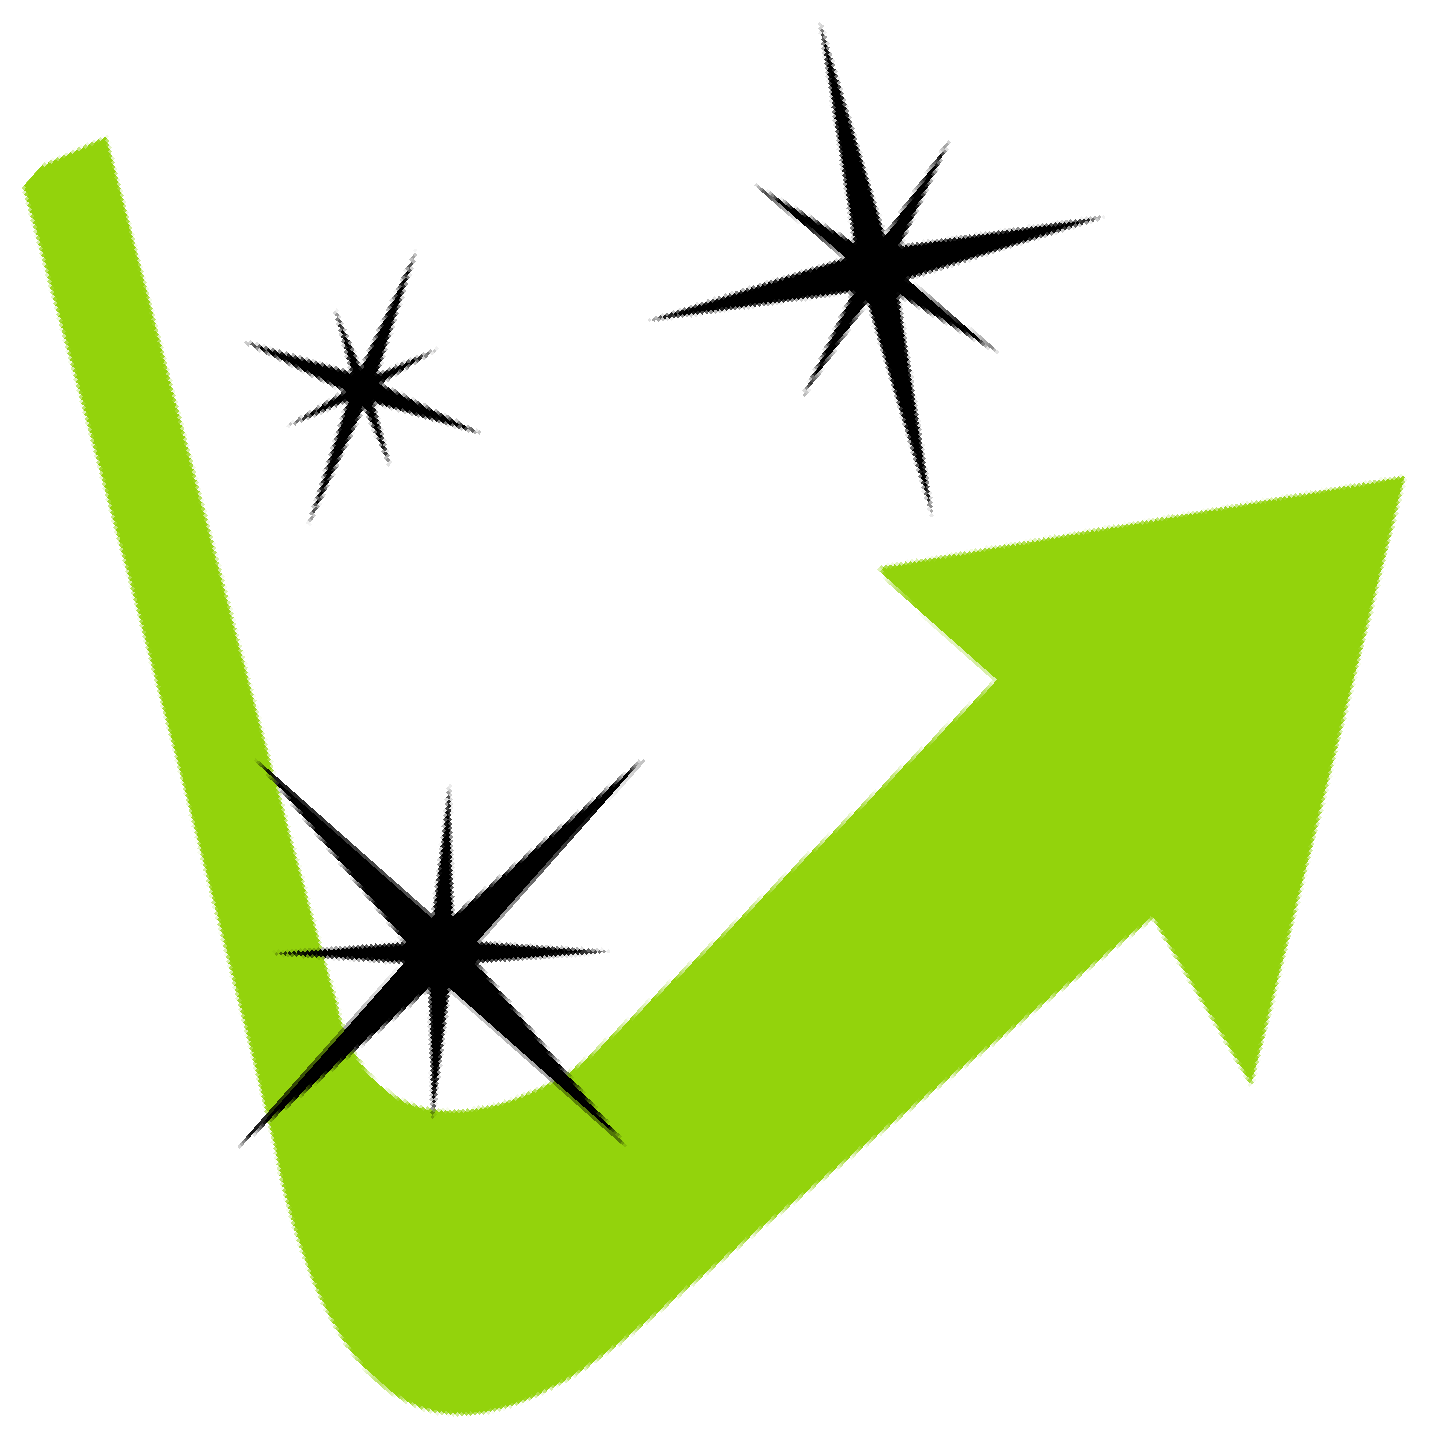 a green arrow with three black stars on it